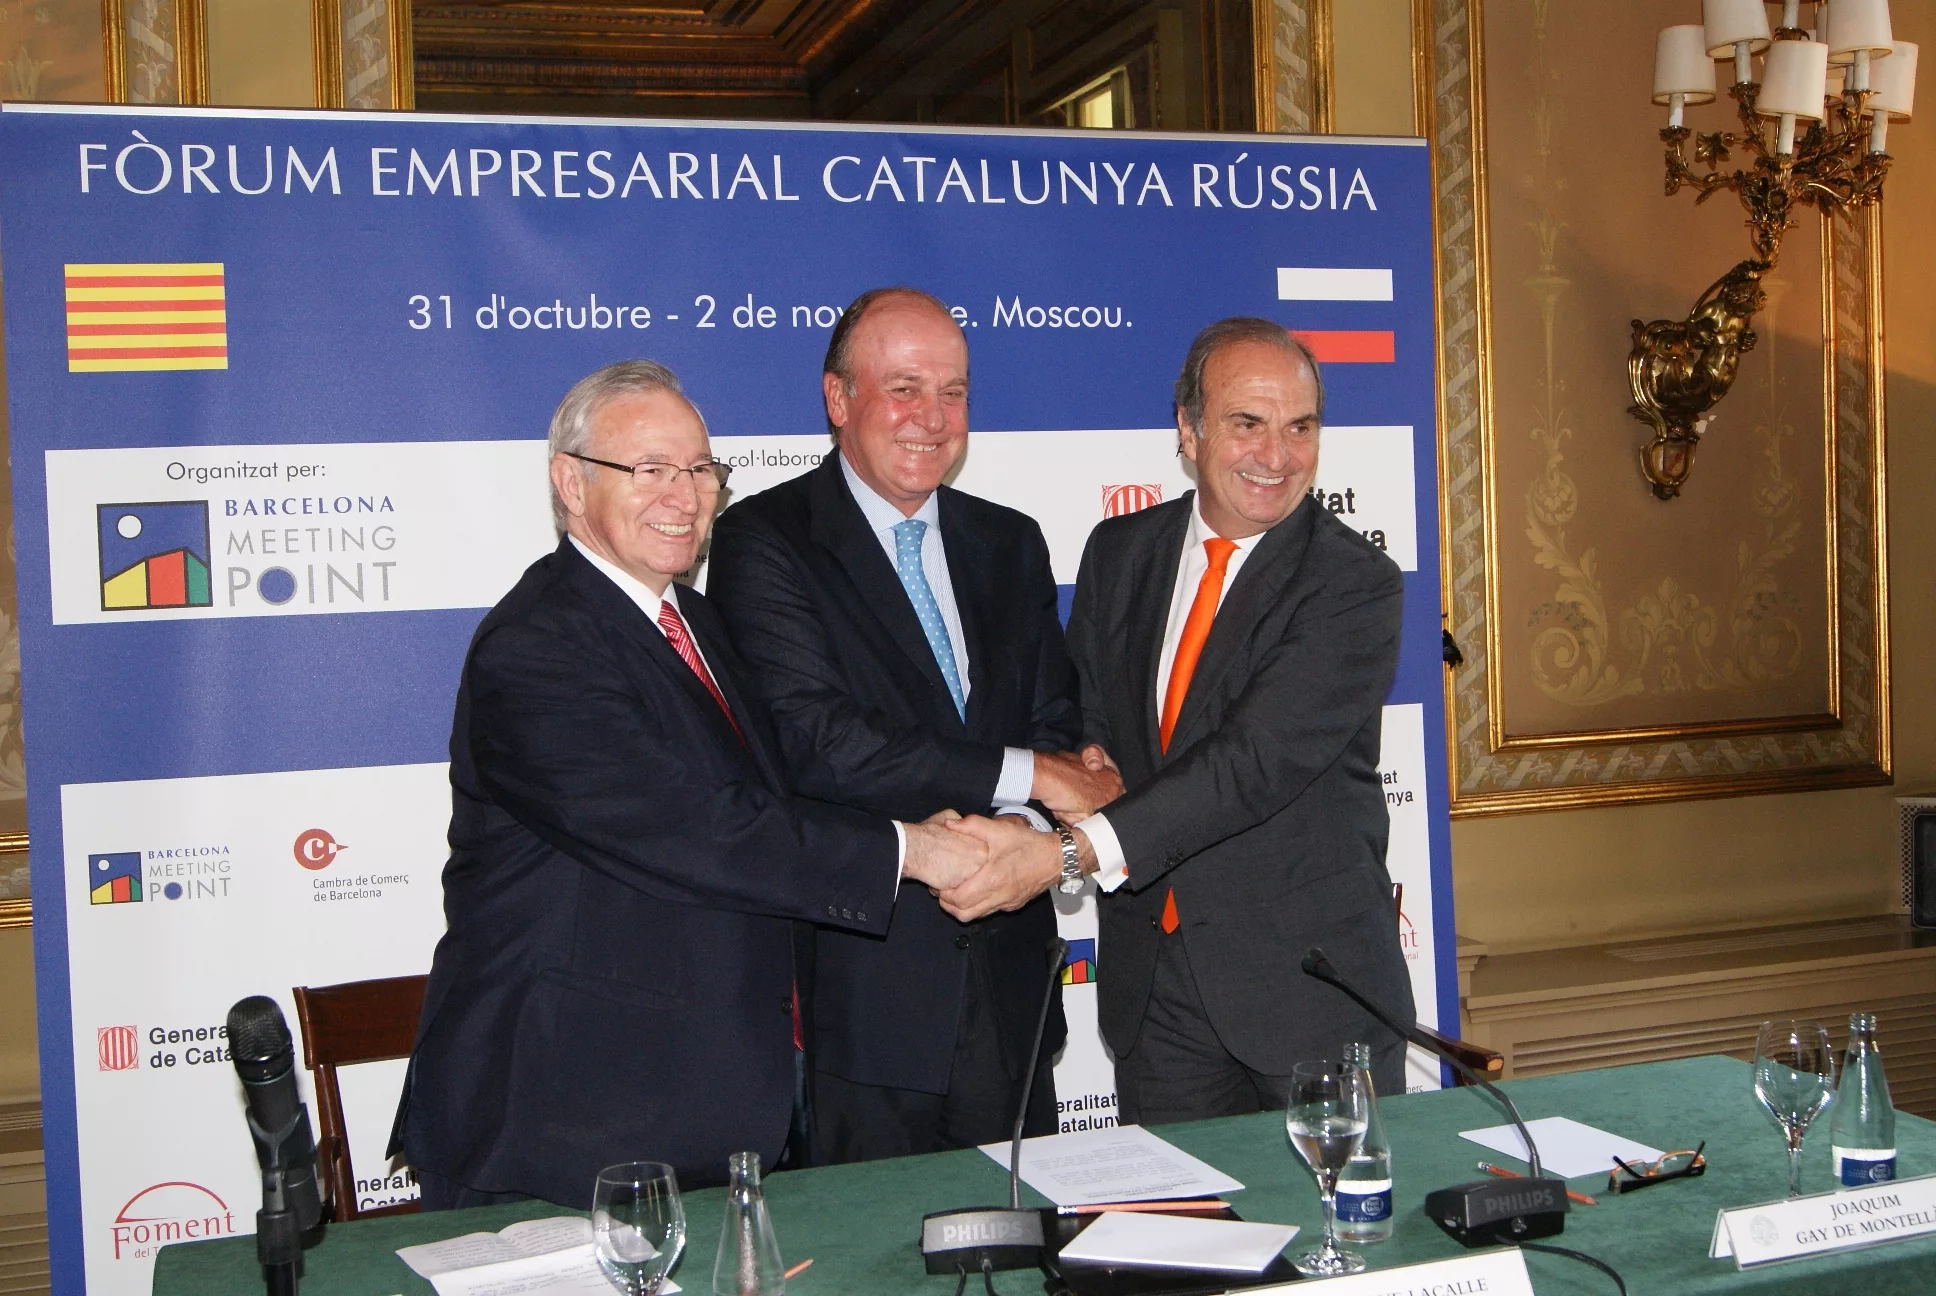 BMP, la Cambra de Comerç de Barcelona i Foment del Treball Nacional presenten el Fòrum Empresarial Catalunya Rússia